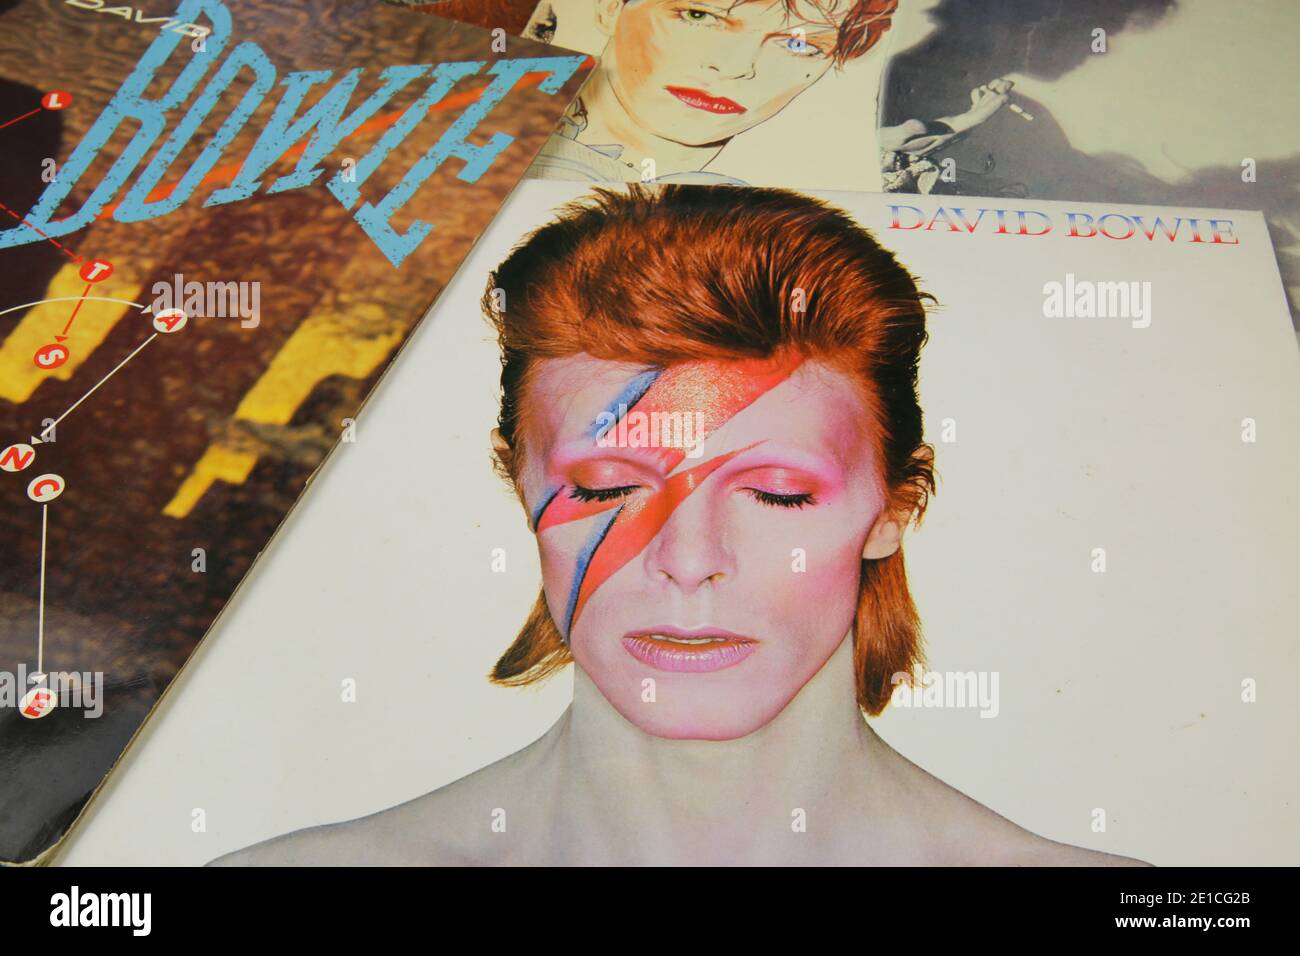 Viersen, Deutschland - 1. Mai. 2020: Nahaufnahme der Vinylplatten-Coverkollektion von Sänger David Bowie Stockfoto